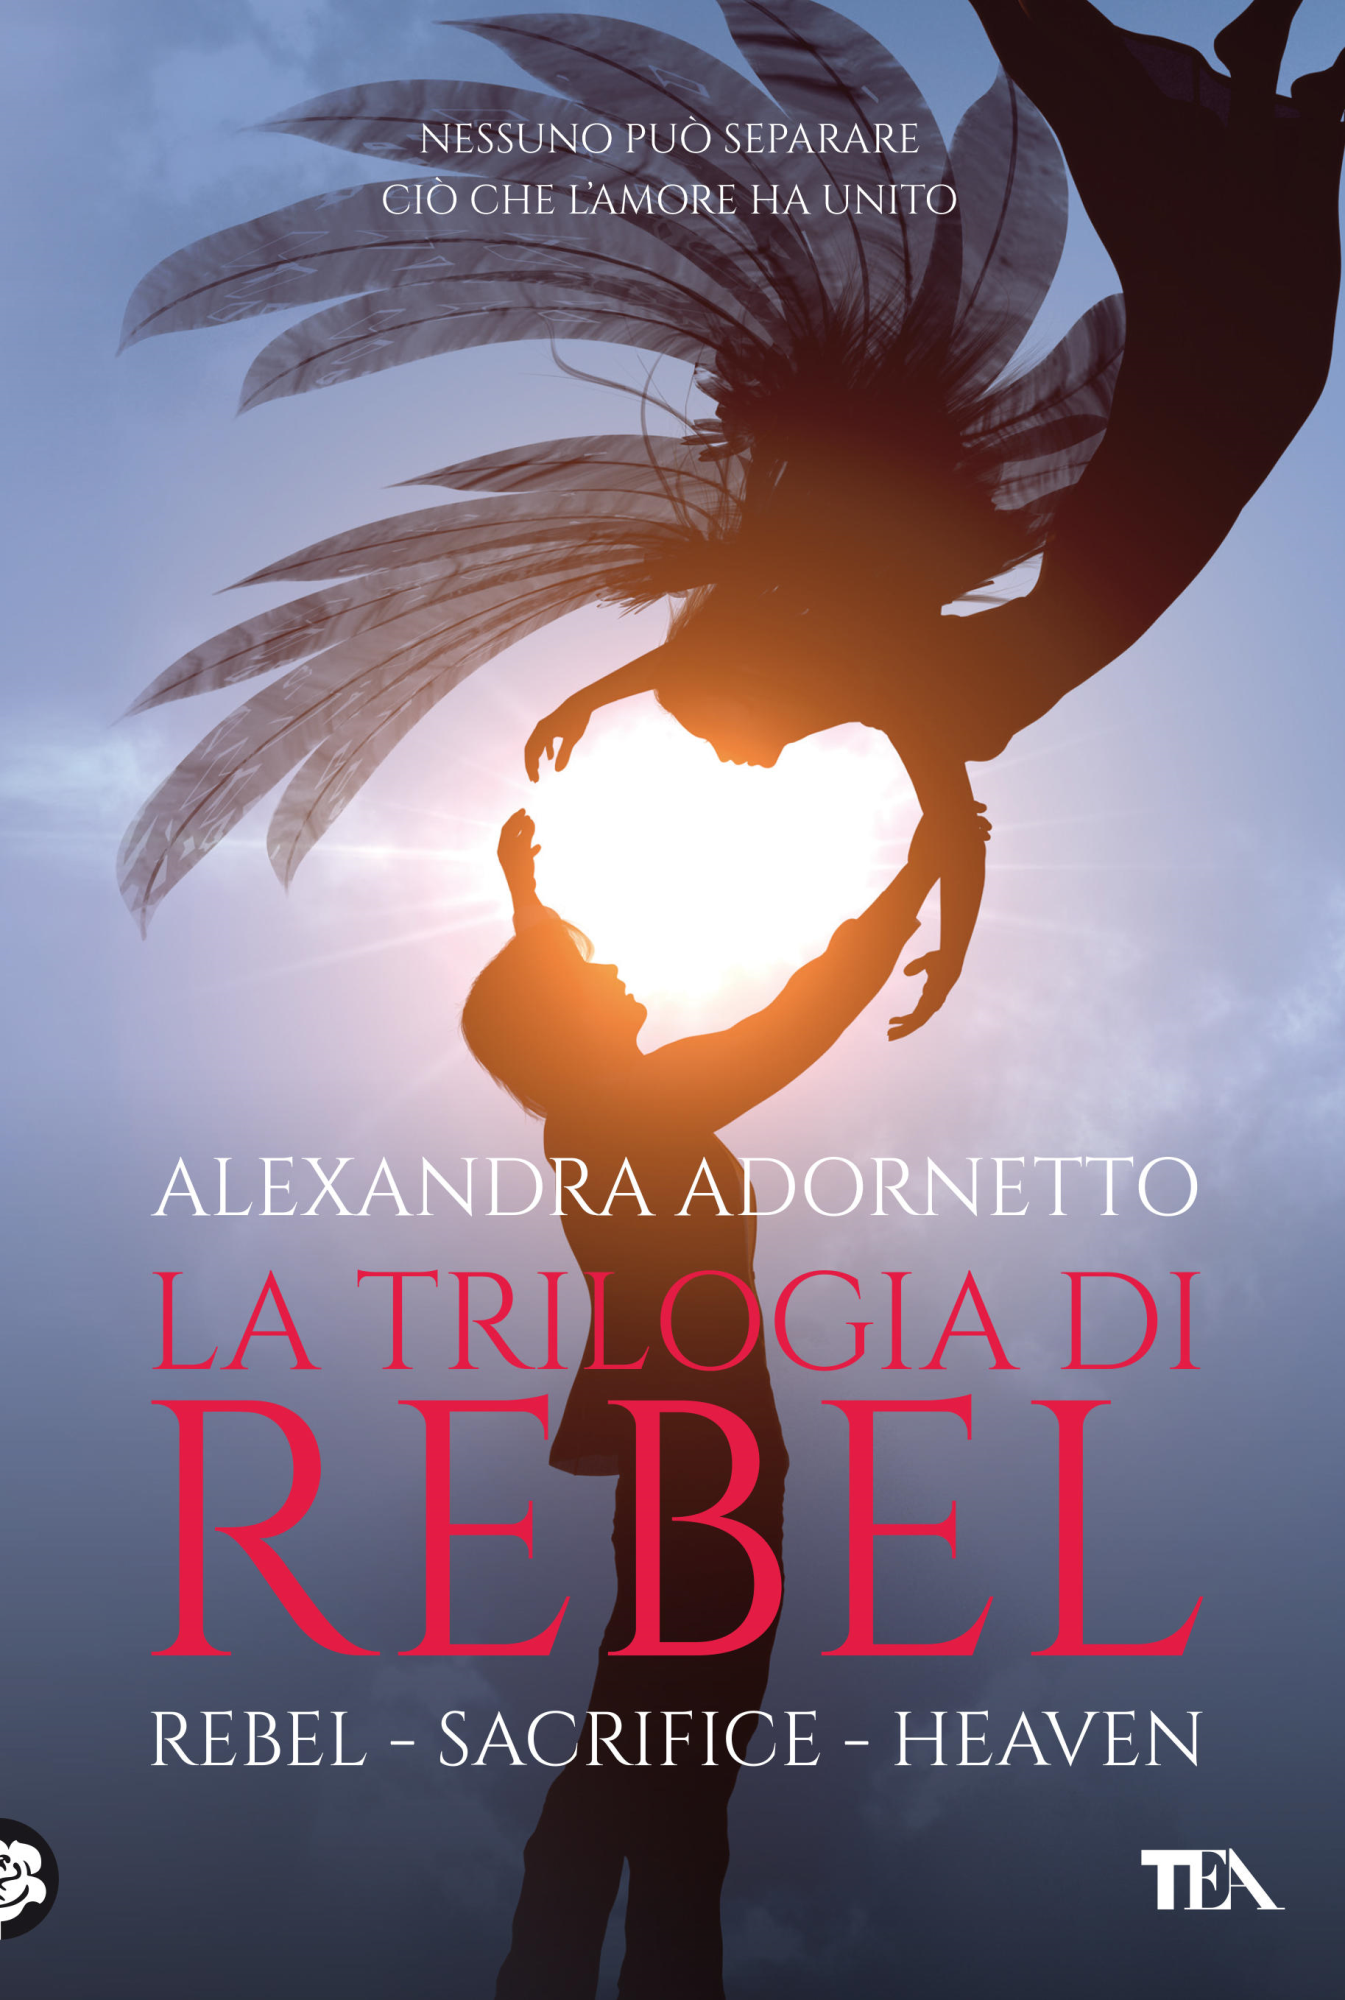 Libri Alexandra Adornetto - La Trilogia Di Rebel: Rebel-Sacrifice-Heaven NUOVO SIGILLATO, EDIZIONE DEL 06/08/2020 SUBITO DISPONIBILE